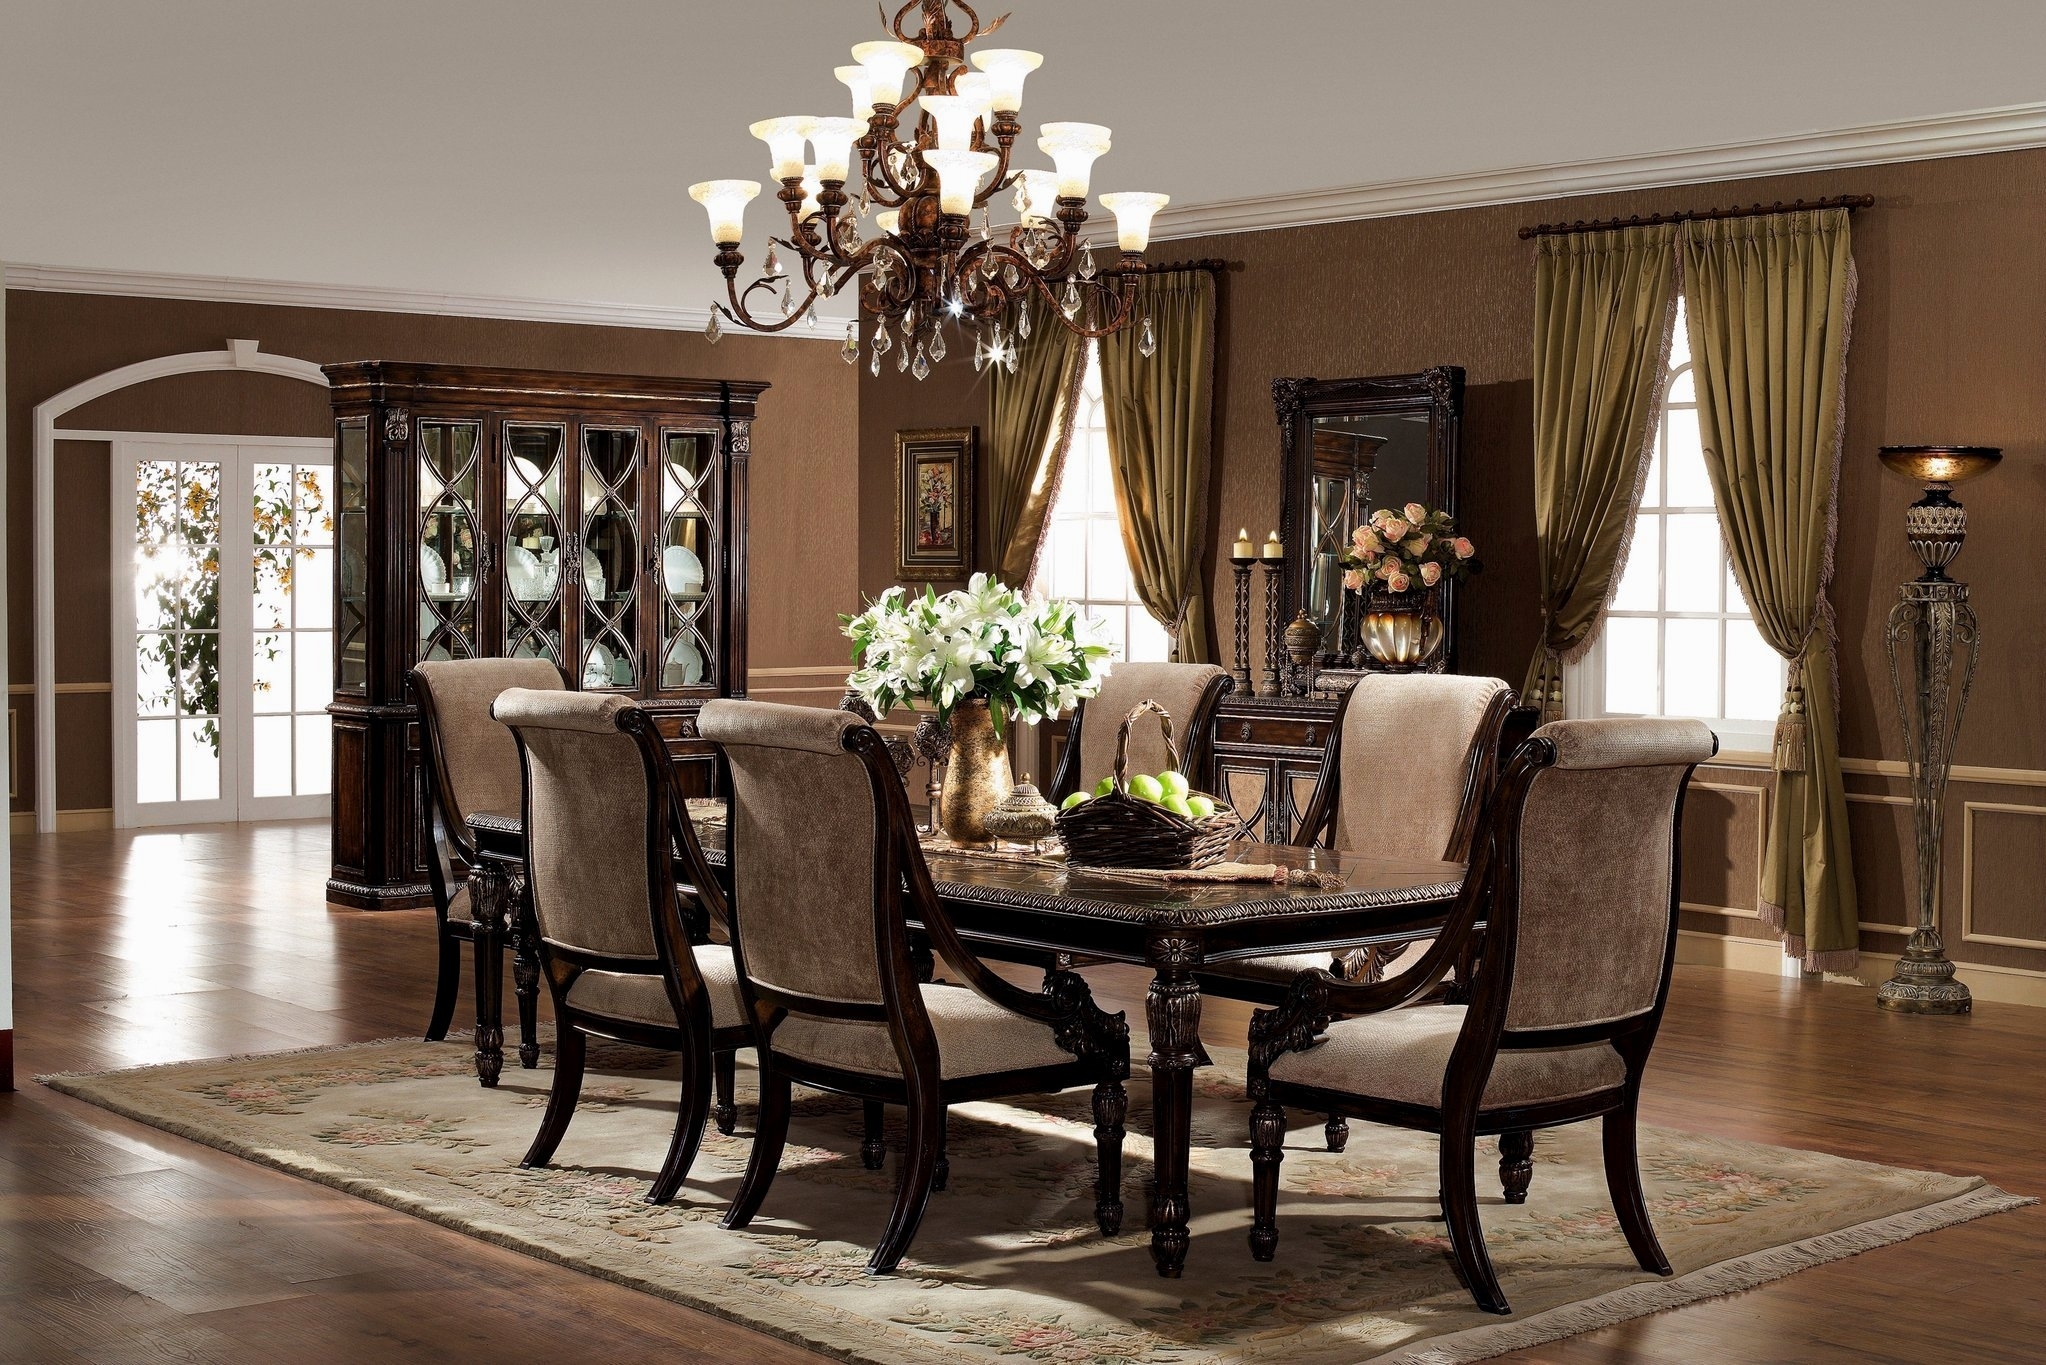 How To Choose Elegant Dining Room Furniture Sets Designforlifes In ...